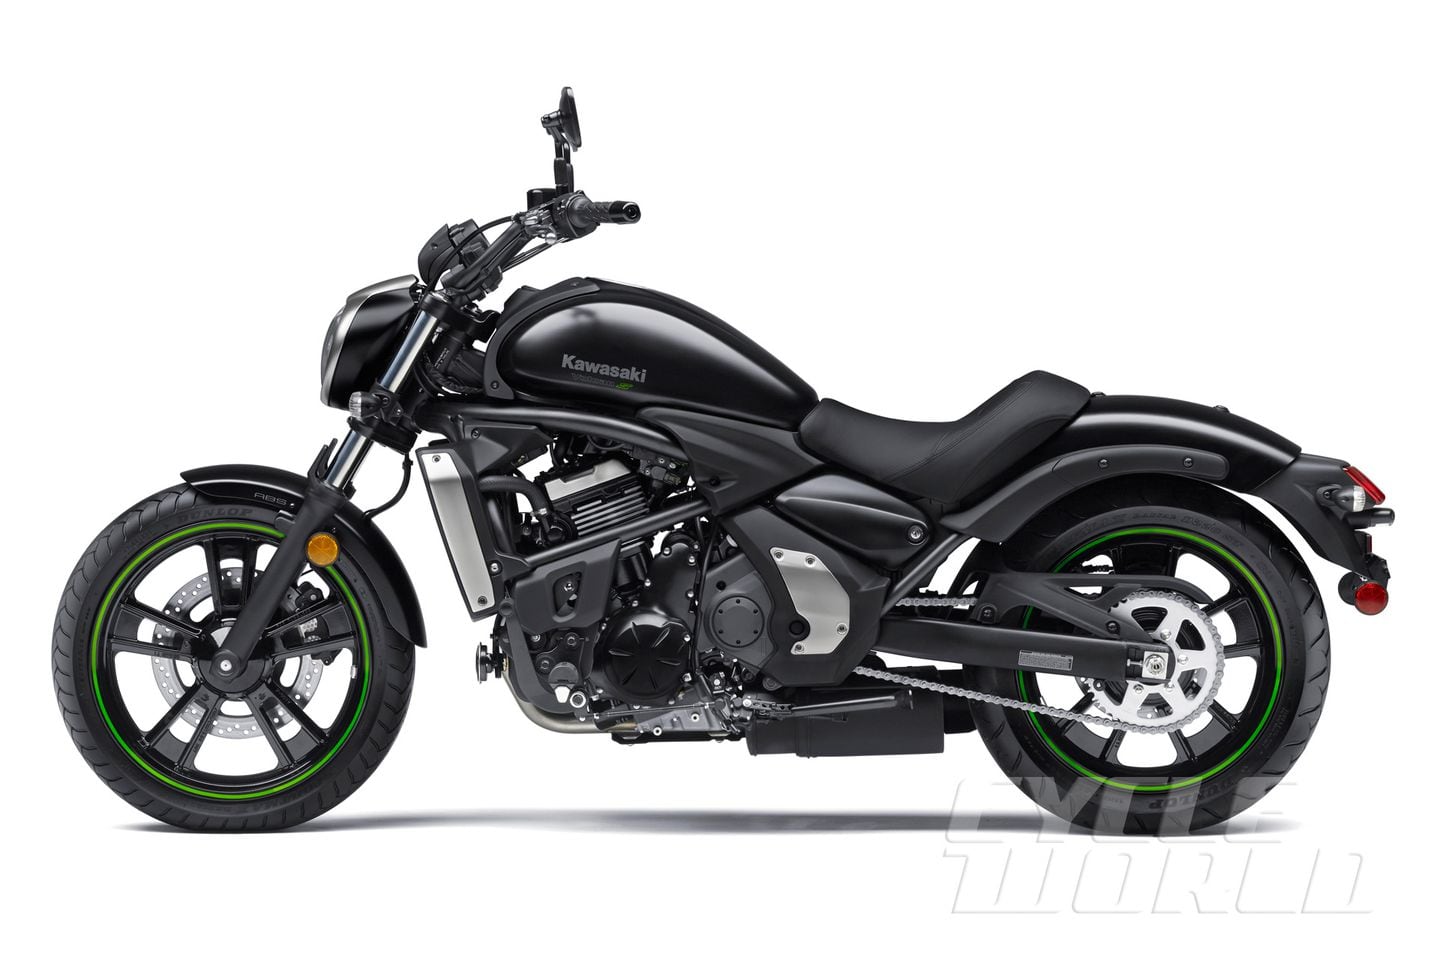 2015 Kawasaki Vulcan S Abs Cruiser Motorcycle Review First Look Photos Cycle World